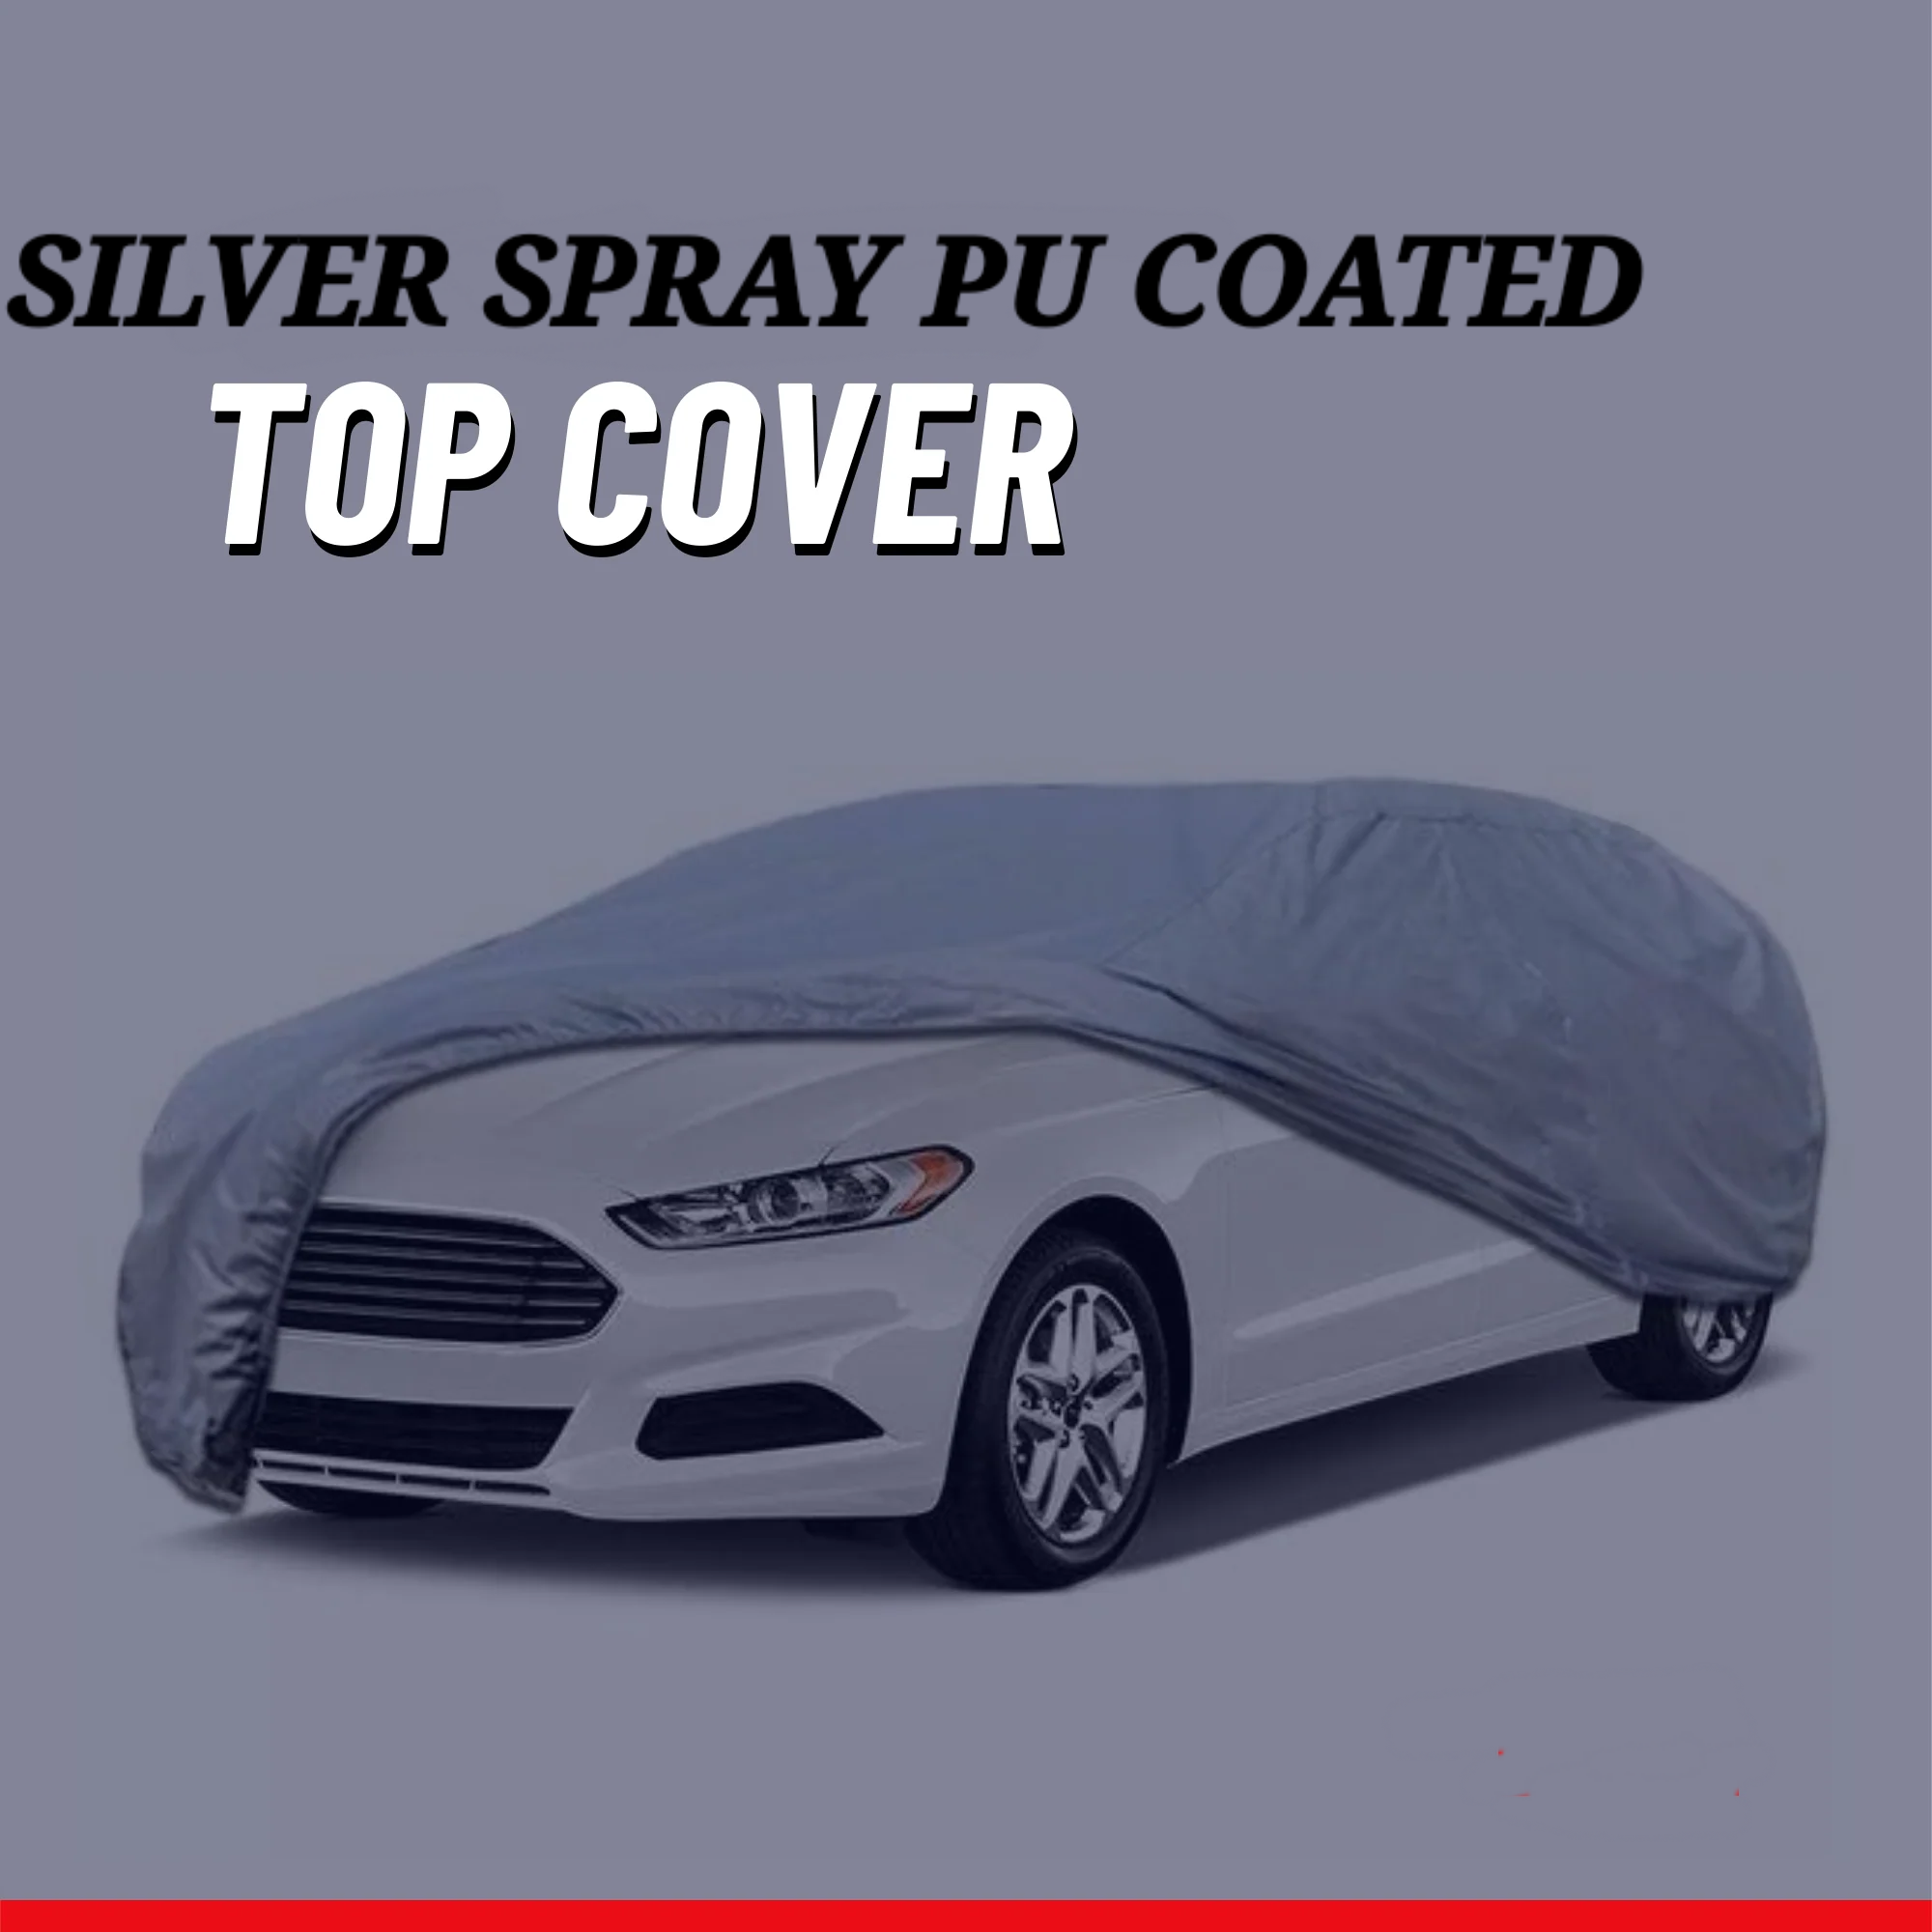 Peugeot 2008 (2022-2023) Car Top Cover - Waterproof & Dustproof Silver Spray Coated + Free Bag